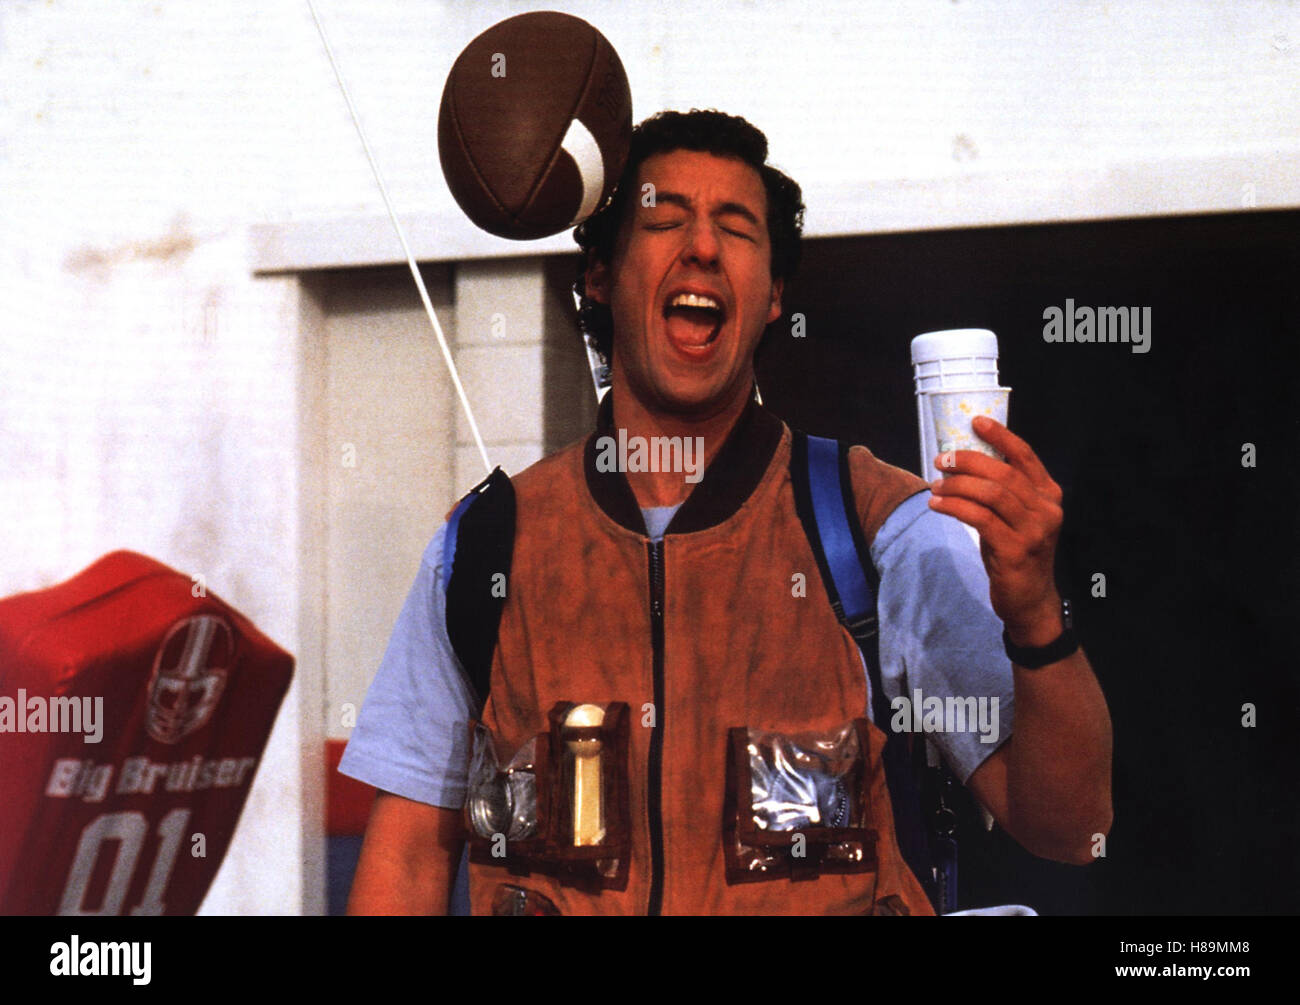 Waterboy - der Typ mit dem Wasserschaden, (THE WATERBOY) USA 1998, Regie: Frank Coraci, ADAM SANDLER, Stichwort: Football, Volltreffer Stock Photo